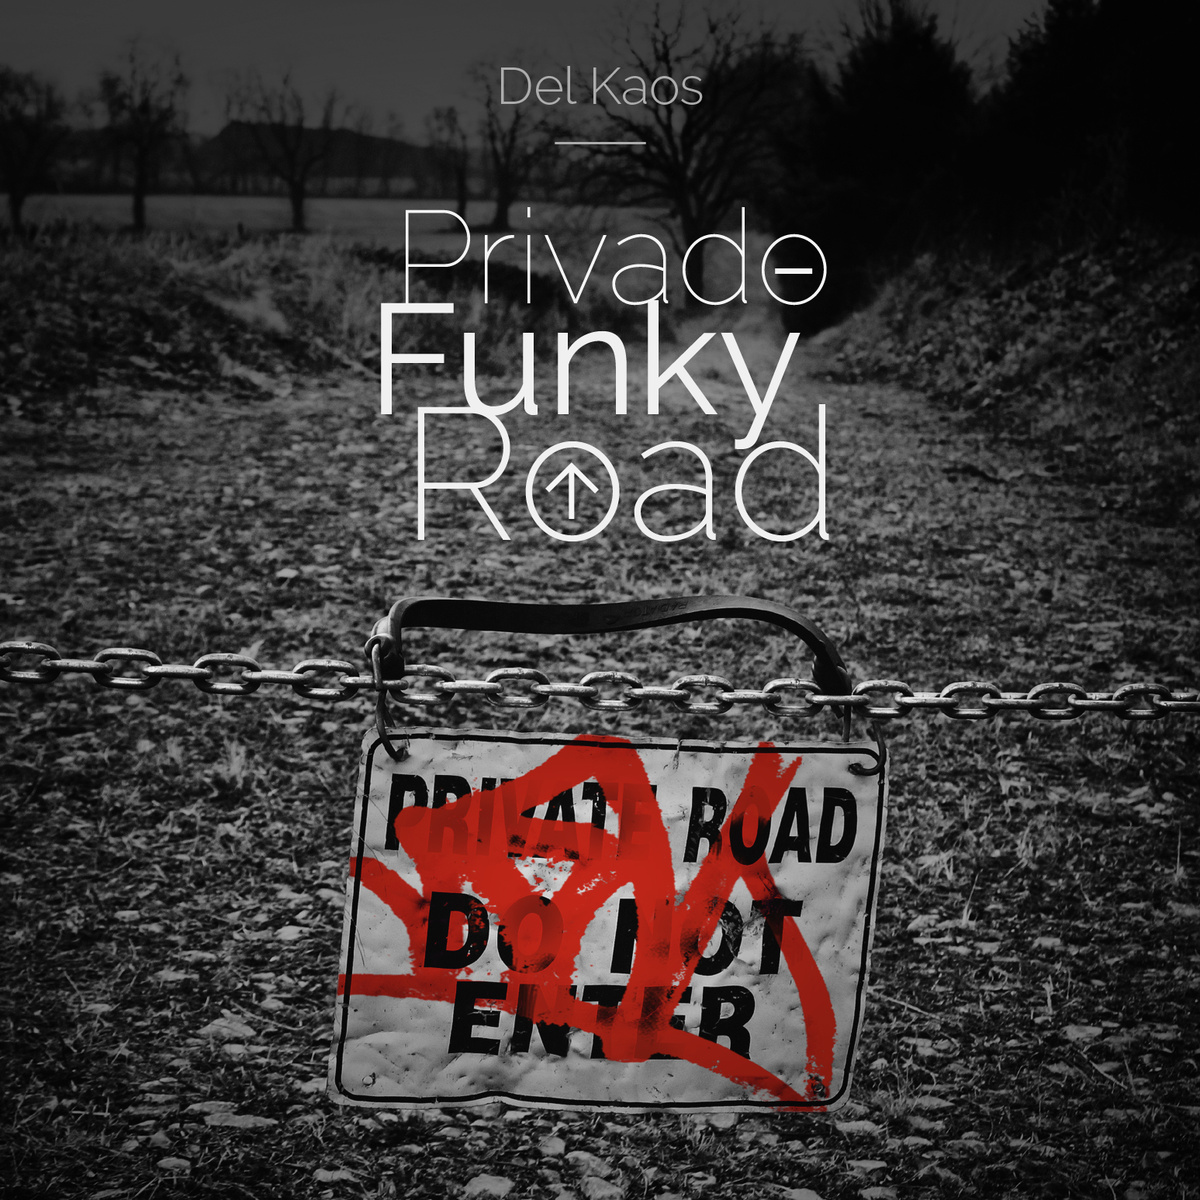 Valle_del_kaos_-_privado_funky_road